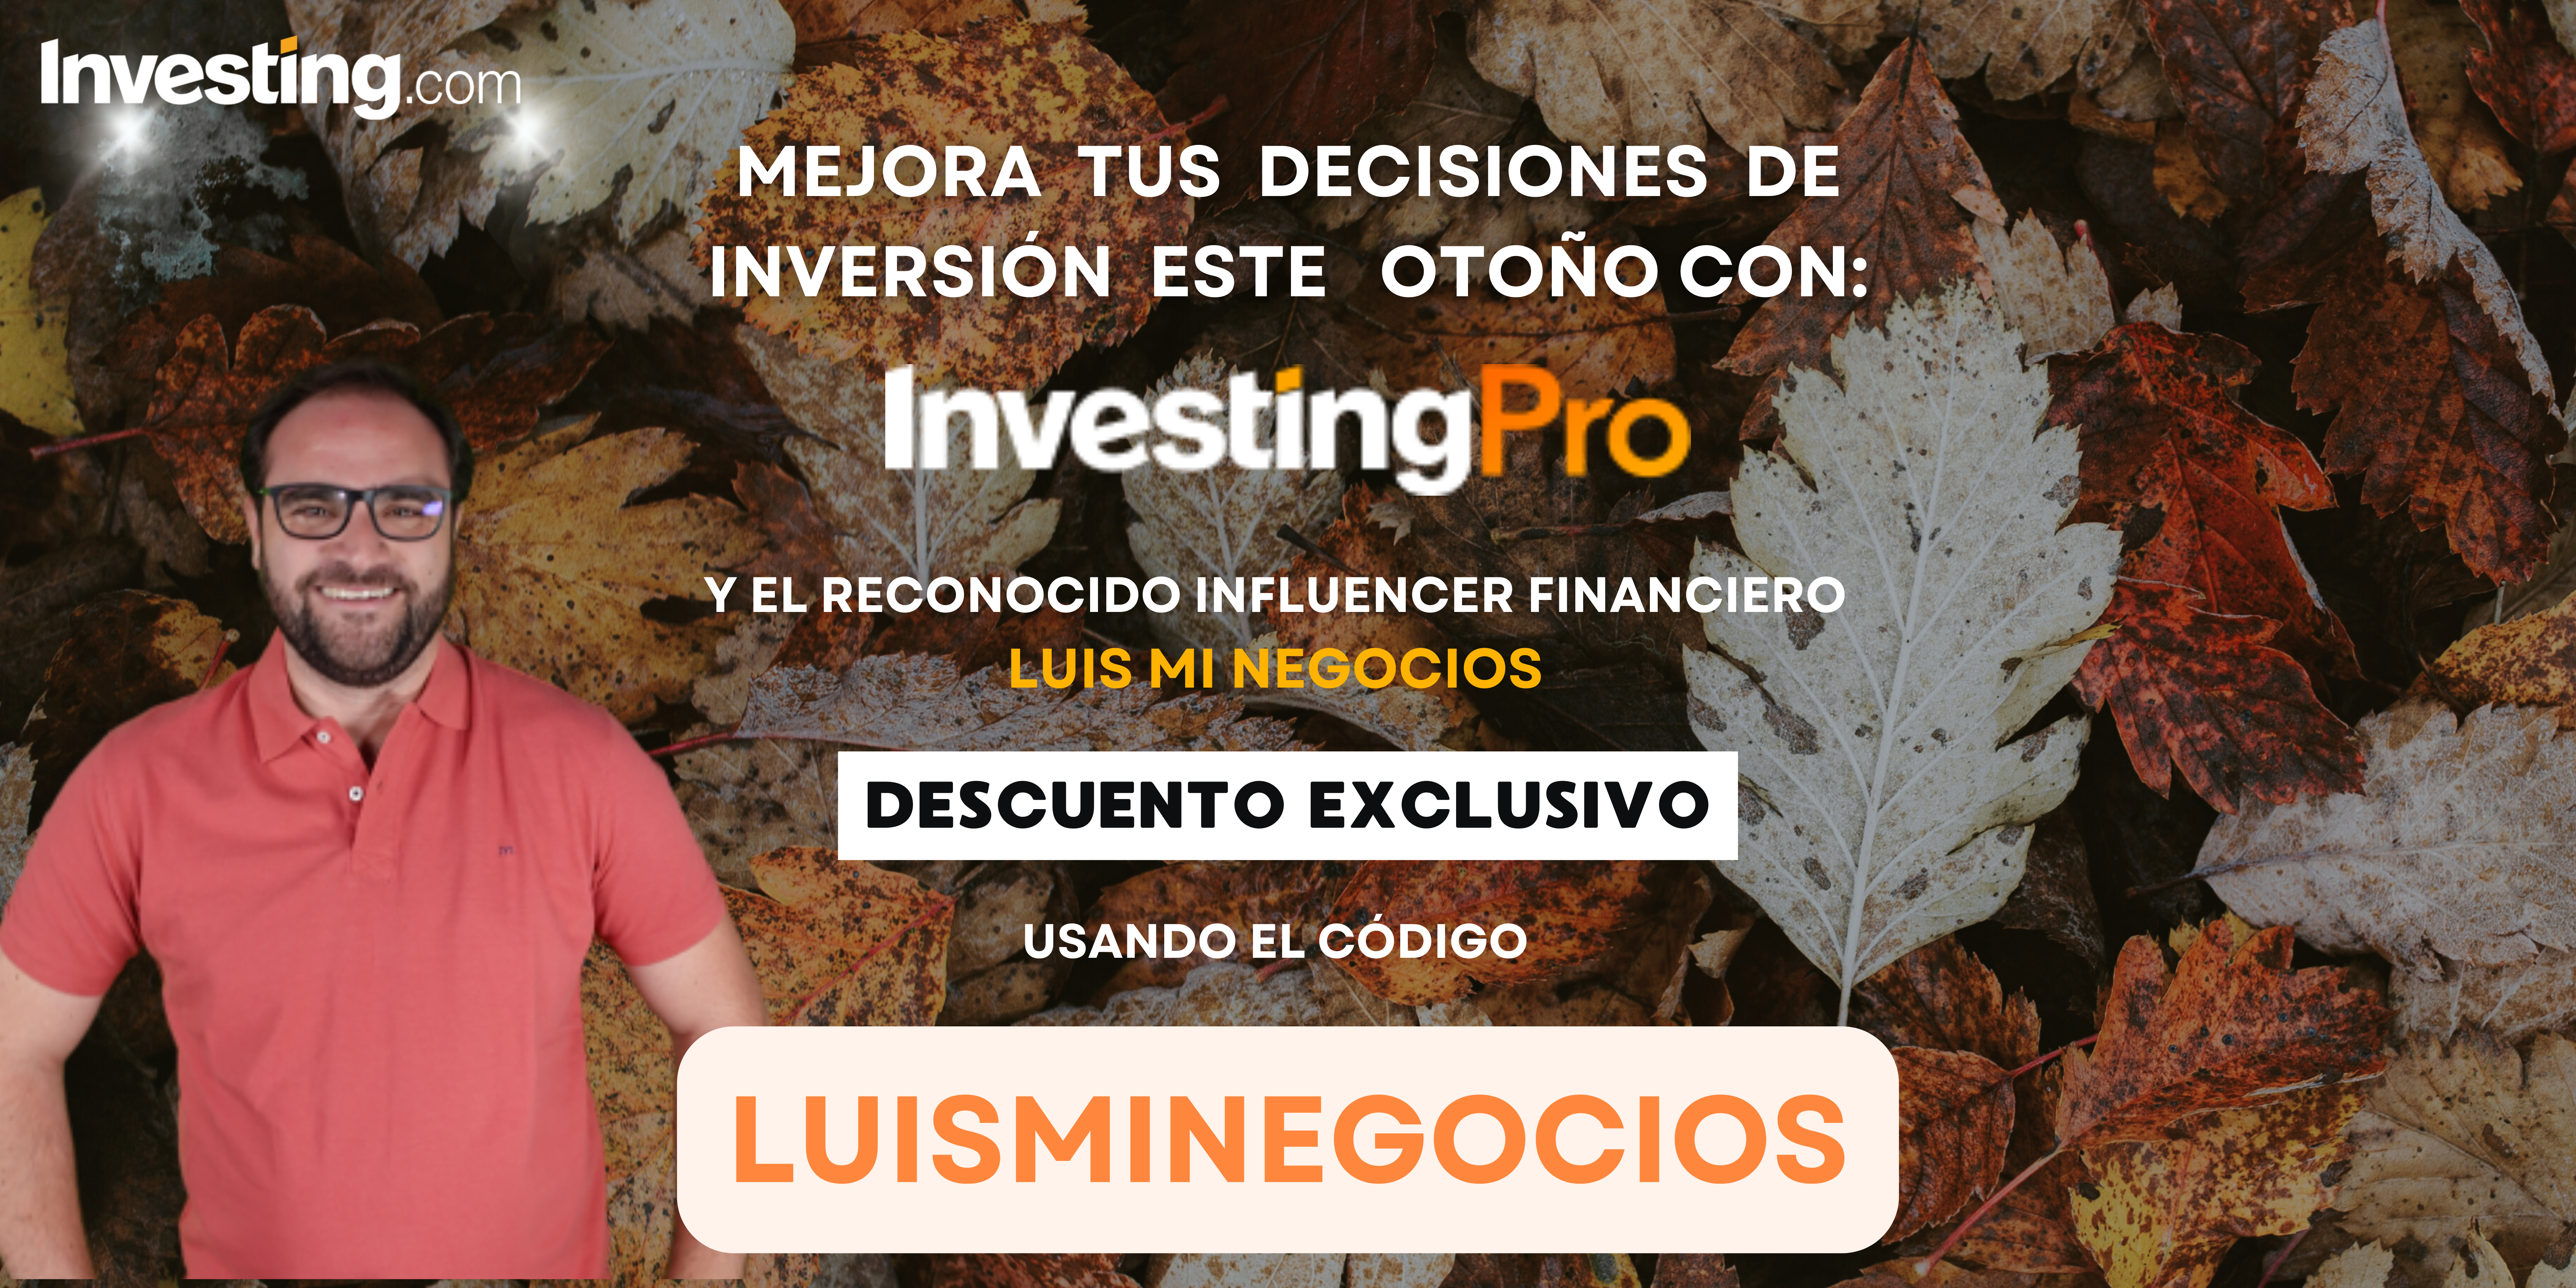 InvestingPro con descuento